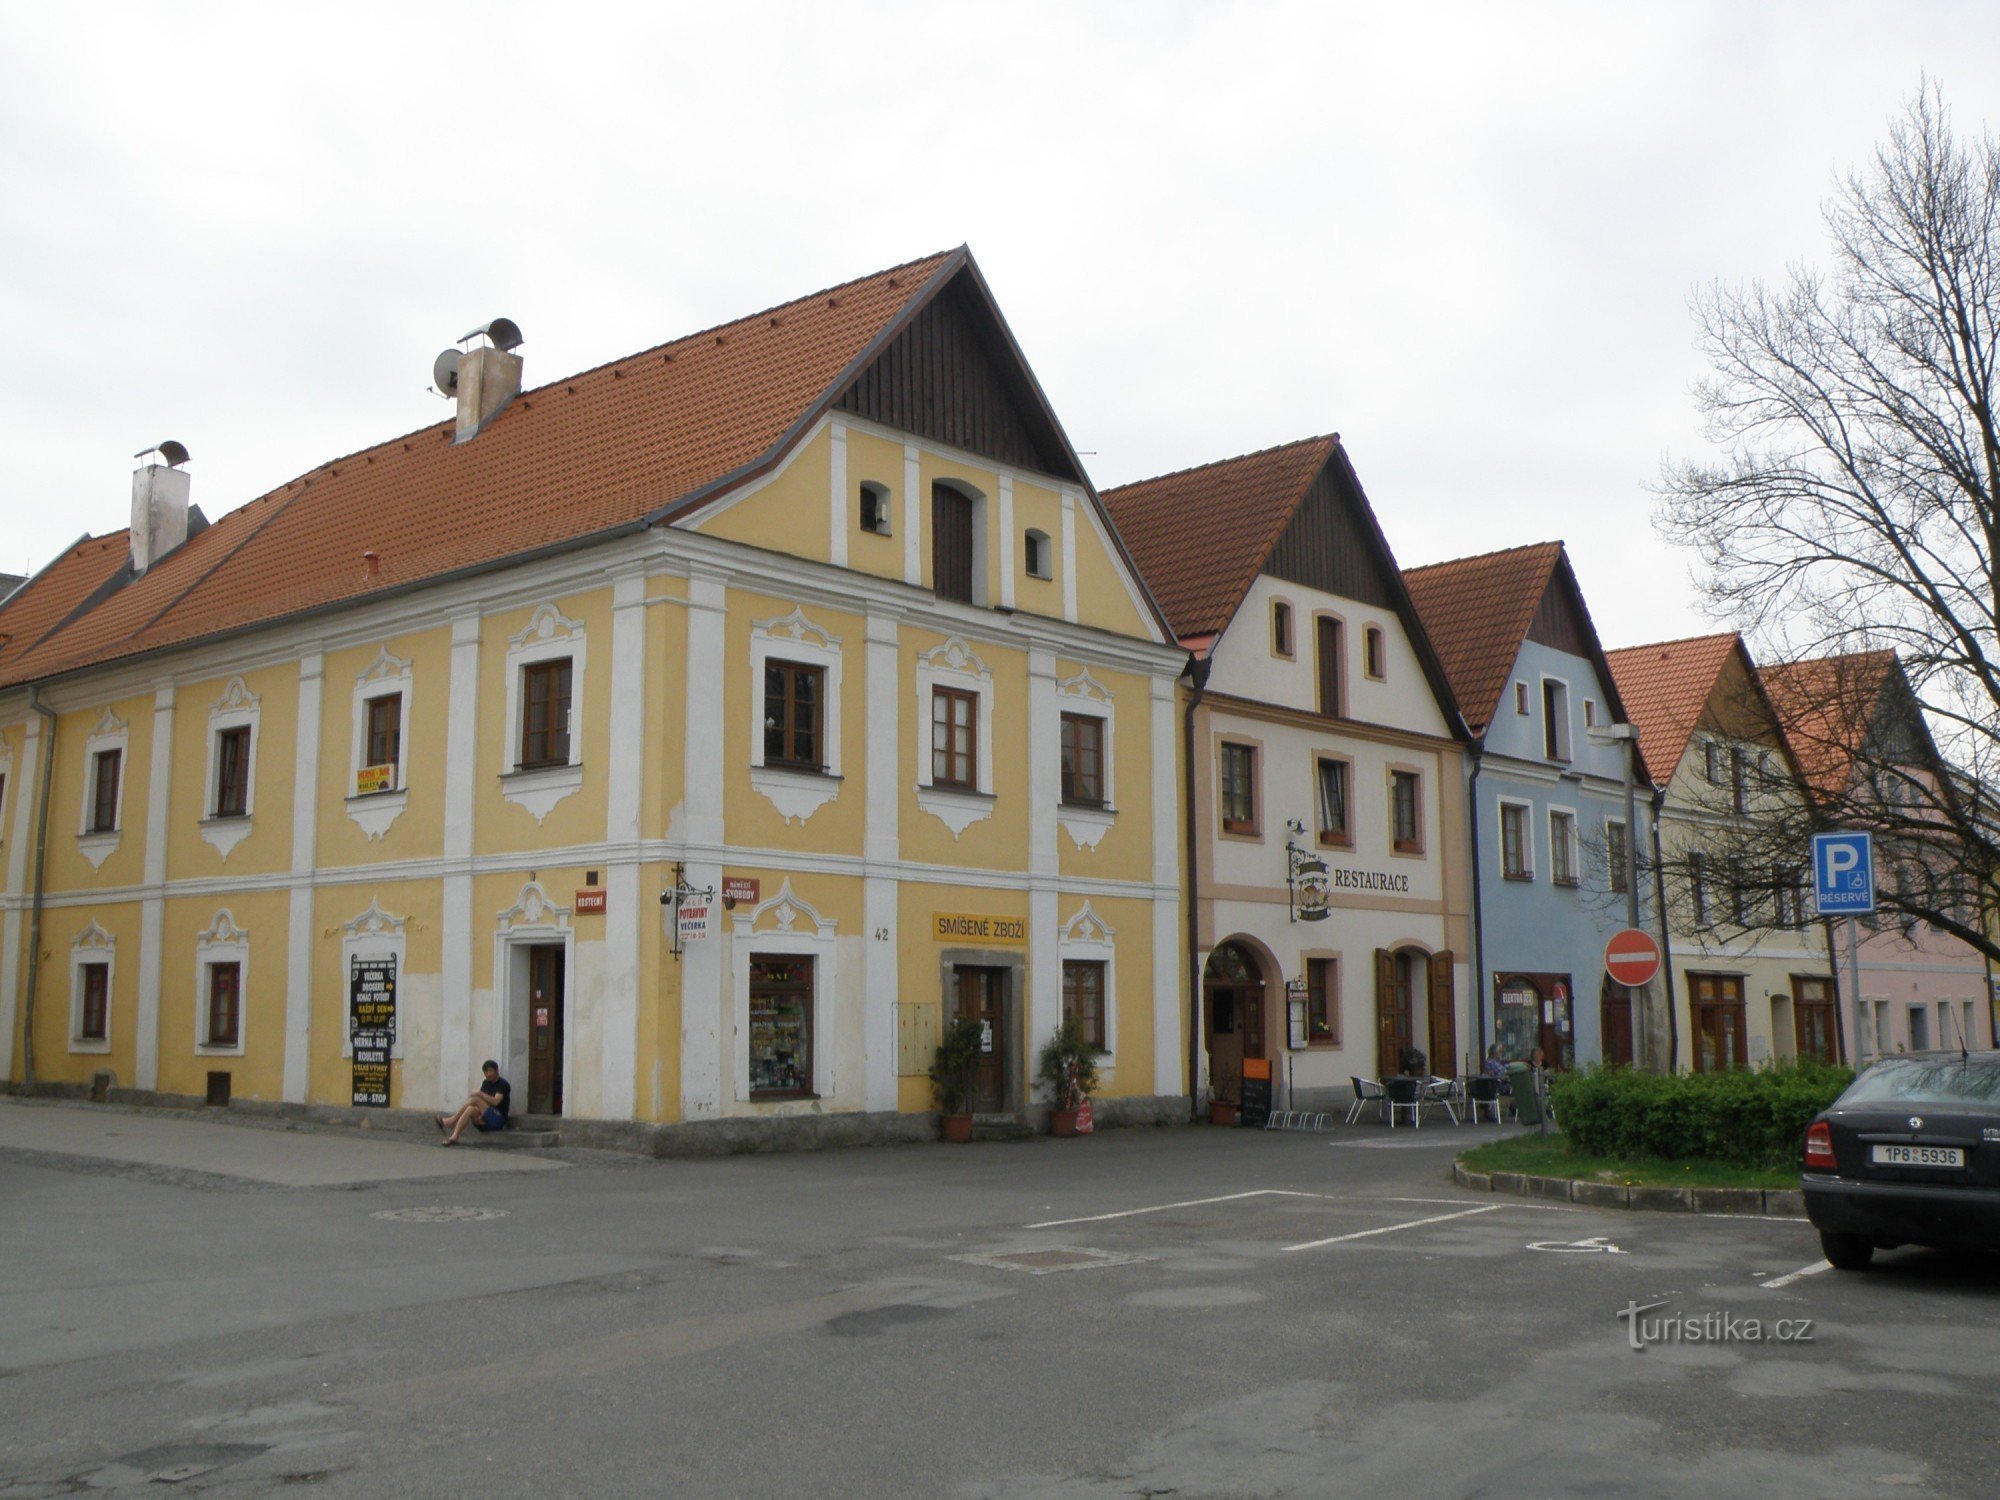 historiska hus på torget